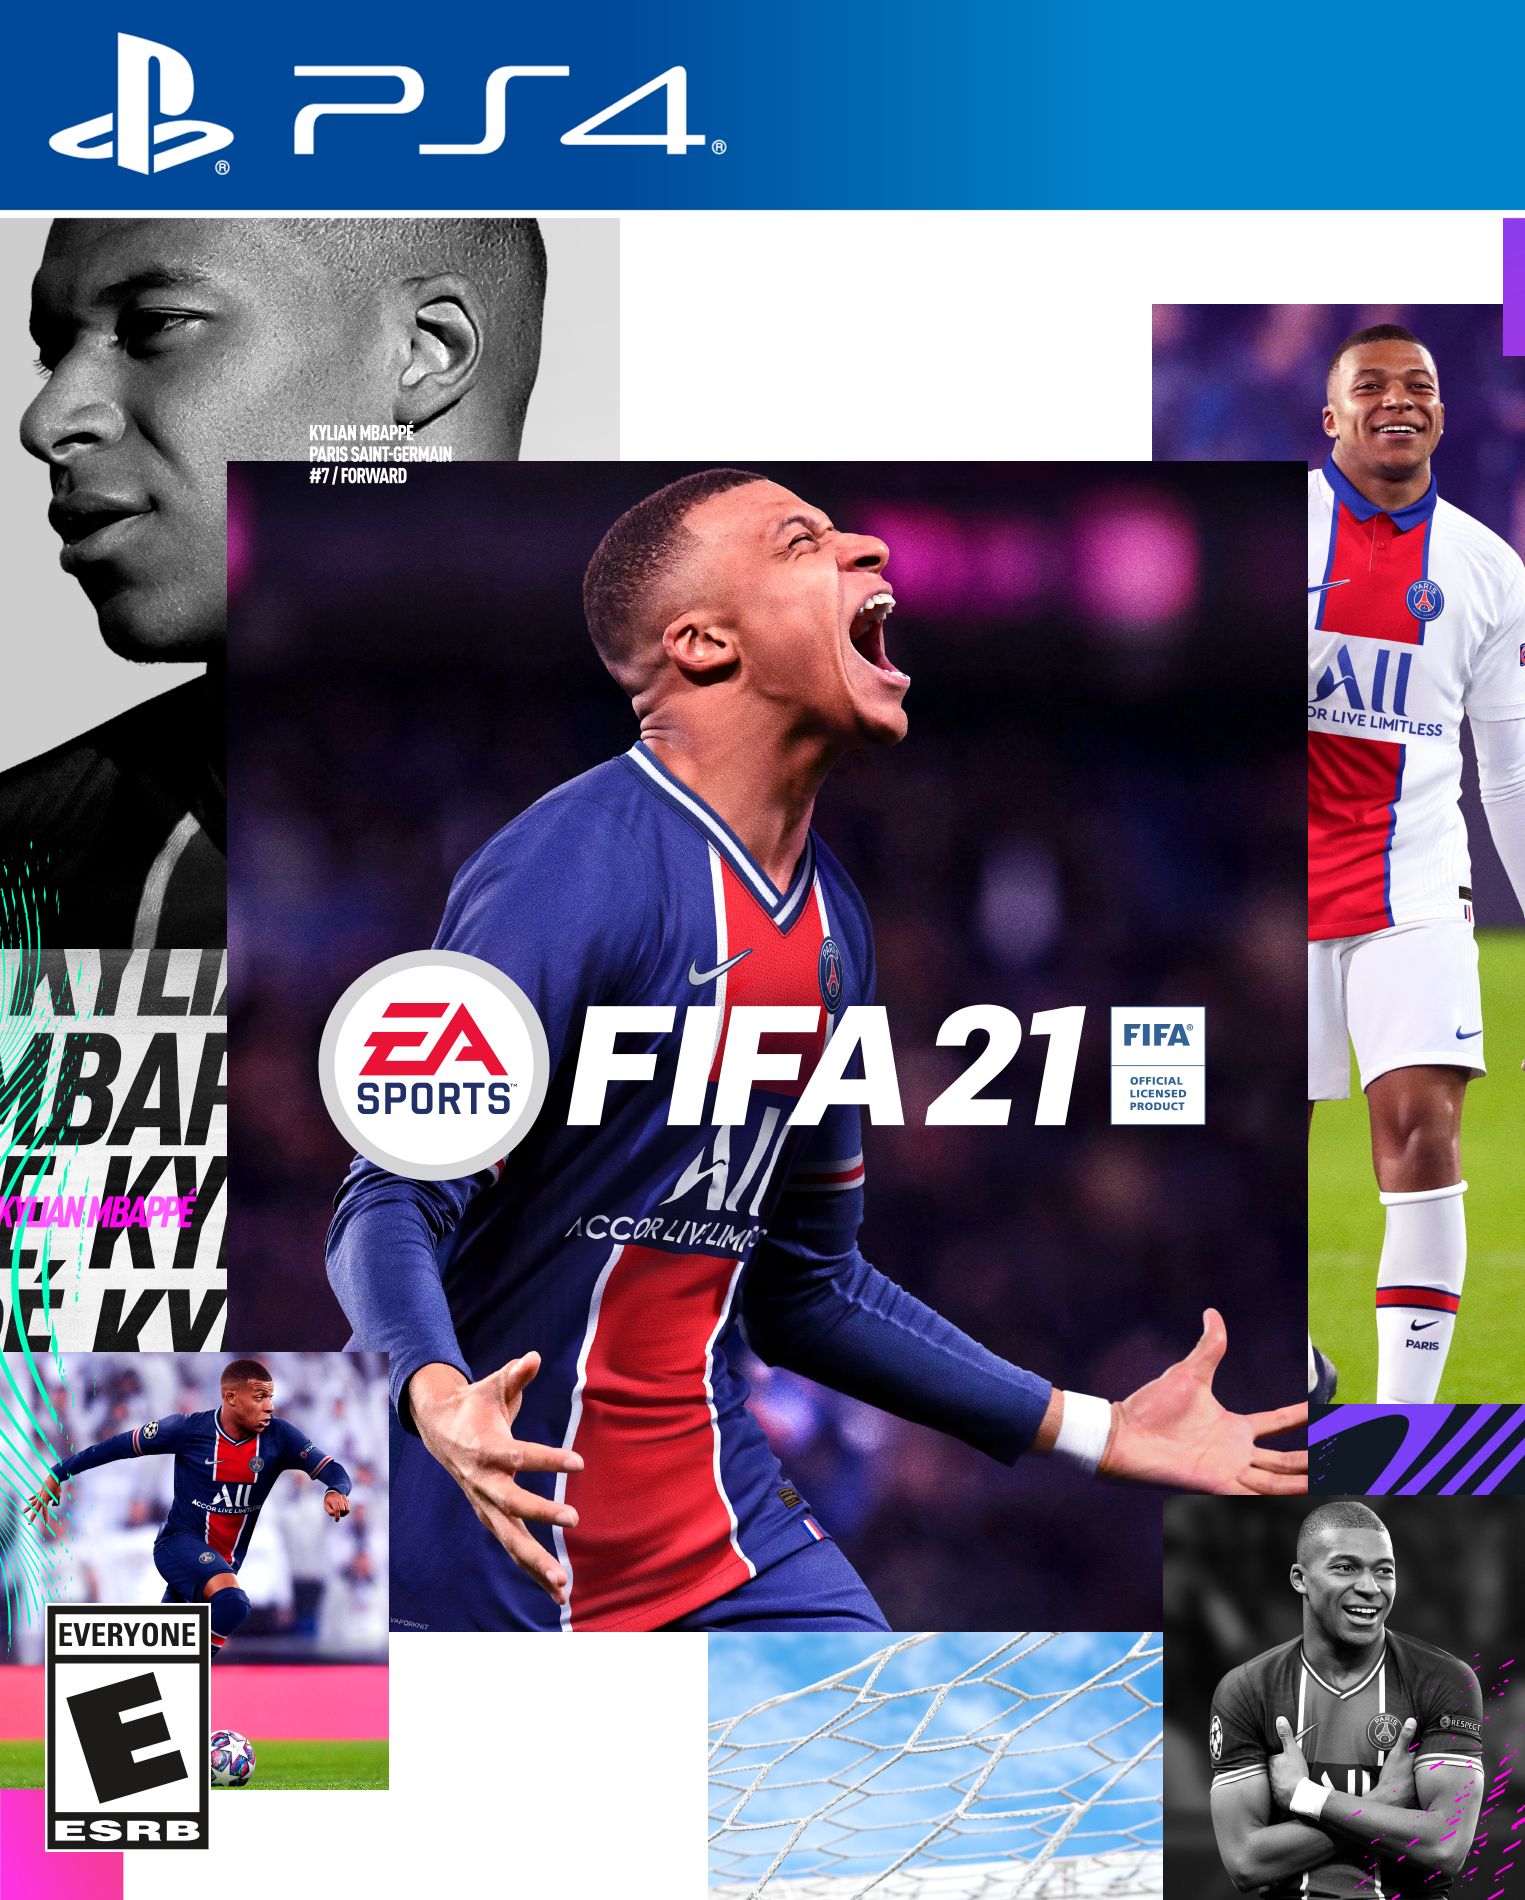 Обложка стандартного издания FIFA 21.
Источник: EA Sports